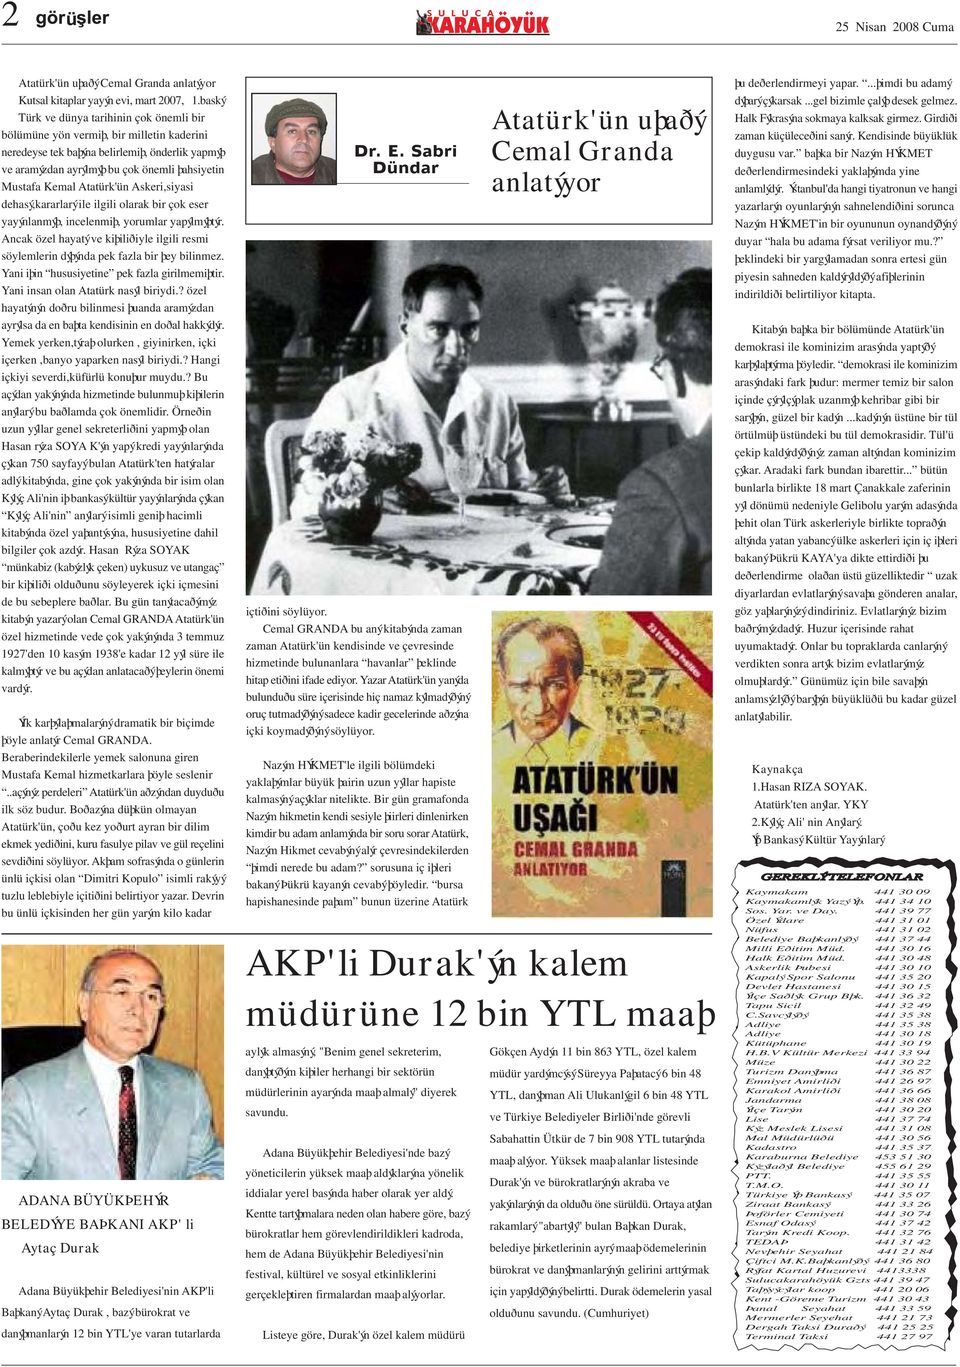 Atatürk'ün Askeri,siyasi dehasý,kararlarý ile ilgili olarak bir çok eser yayýnlanmýþ, incelenmiþ, yorumlar yapýlmýþtýr.